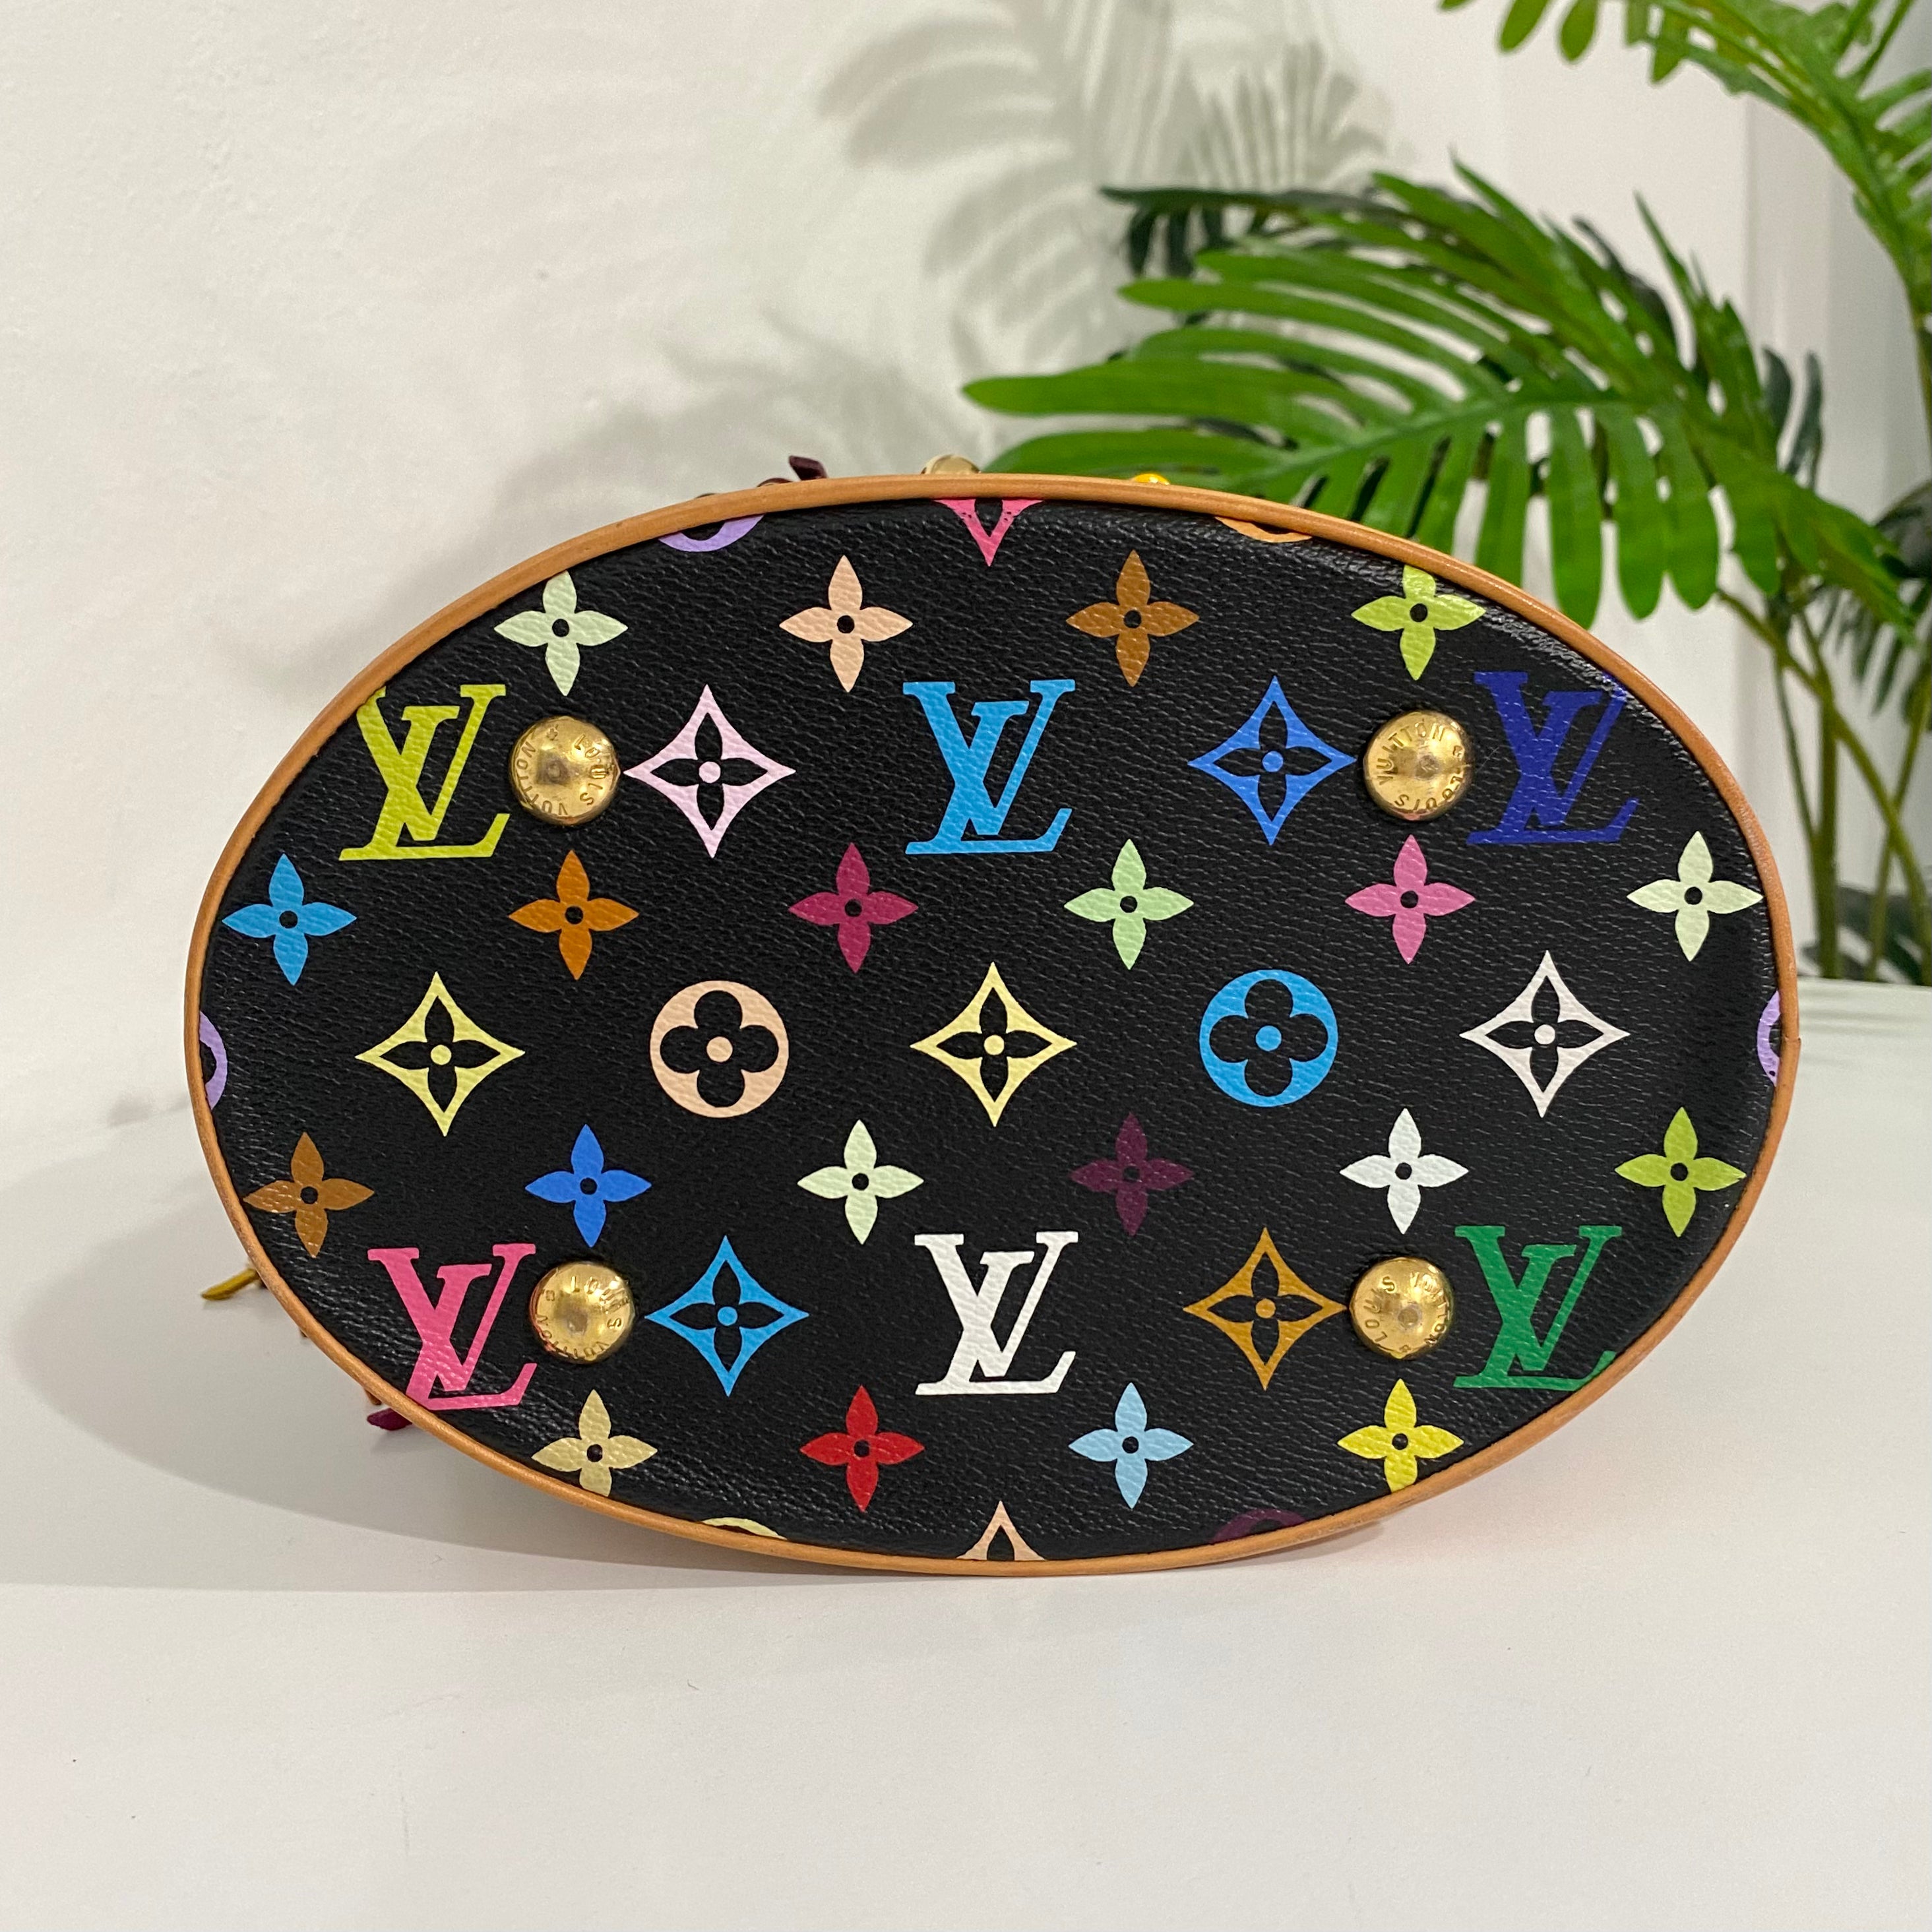 Louis Vuitton Monogram Multicolor Bucket Flange 2006 Limited Noir M40110 Handbag  Bag Black LV0039 LOUIS VUITTON